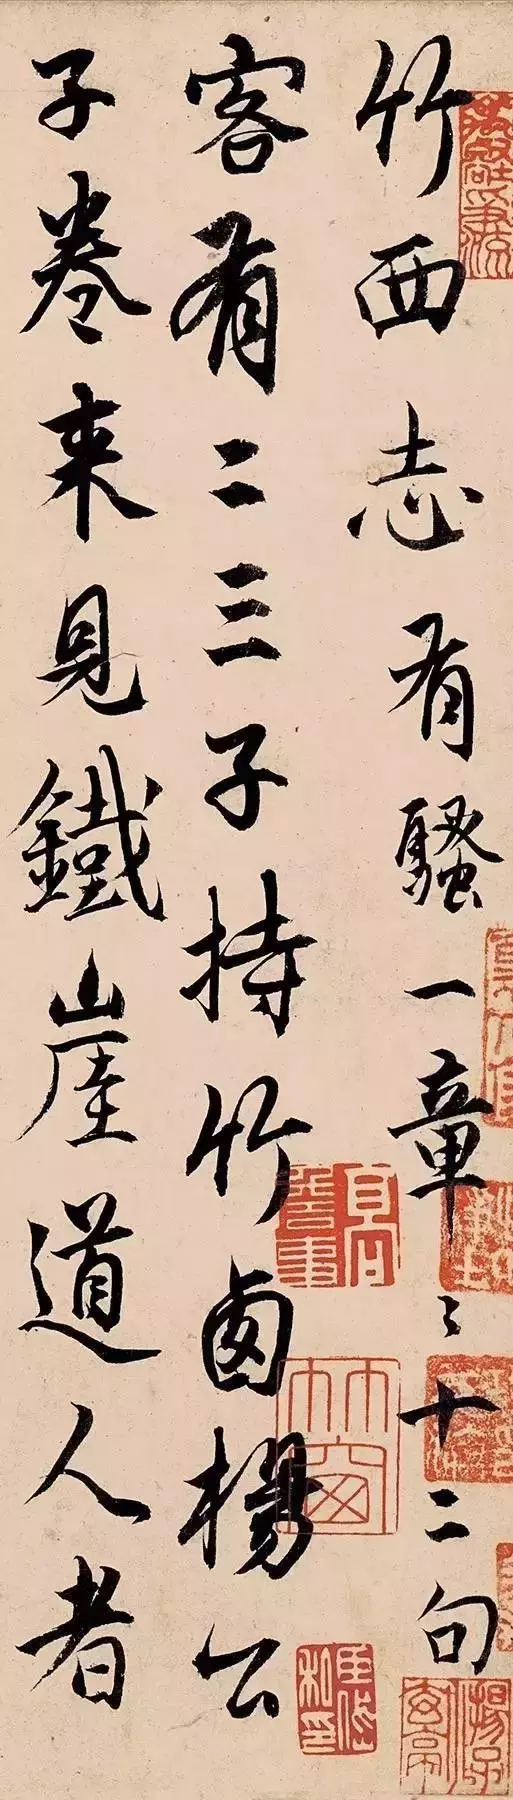 元-杨维桢行书代表作《竹西草堂志》欣赏-好字无忧